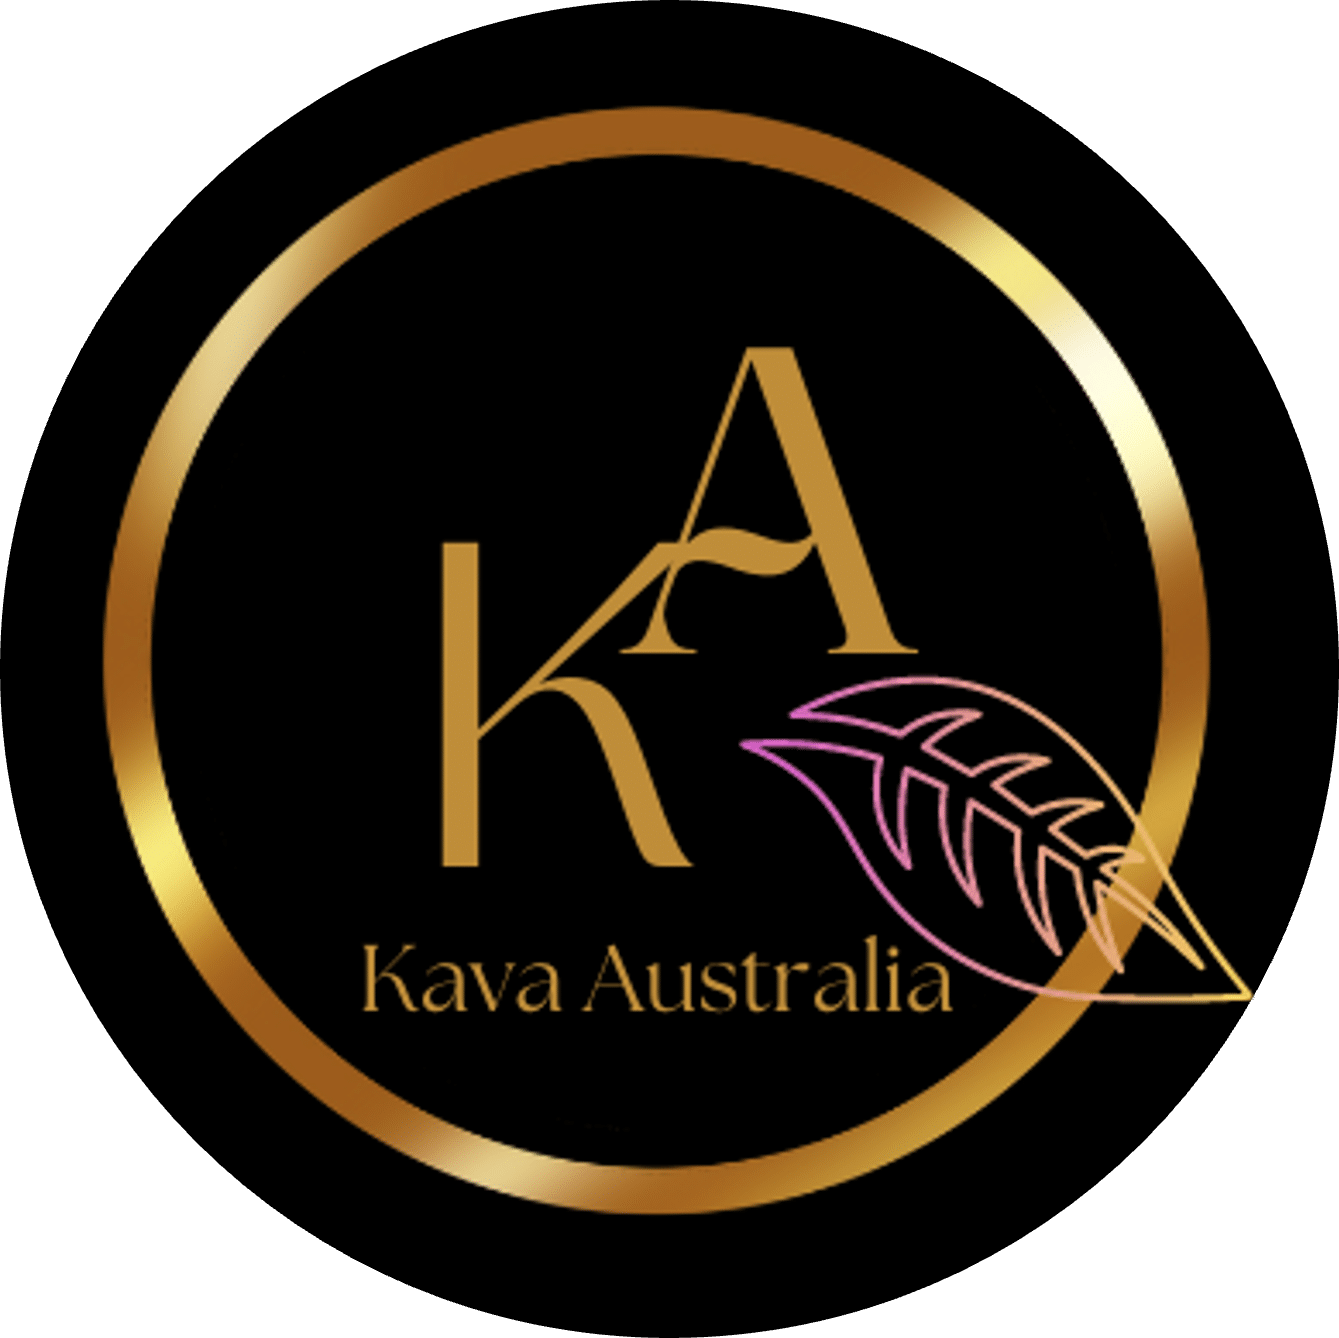 Buy Kava in Perth - Kava Australia